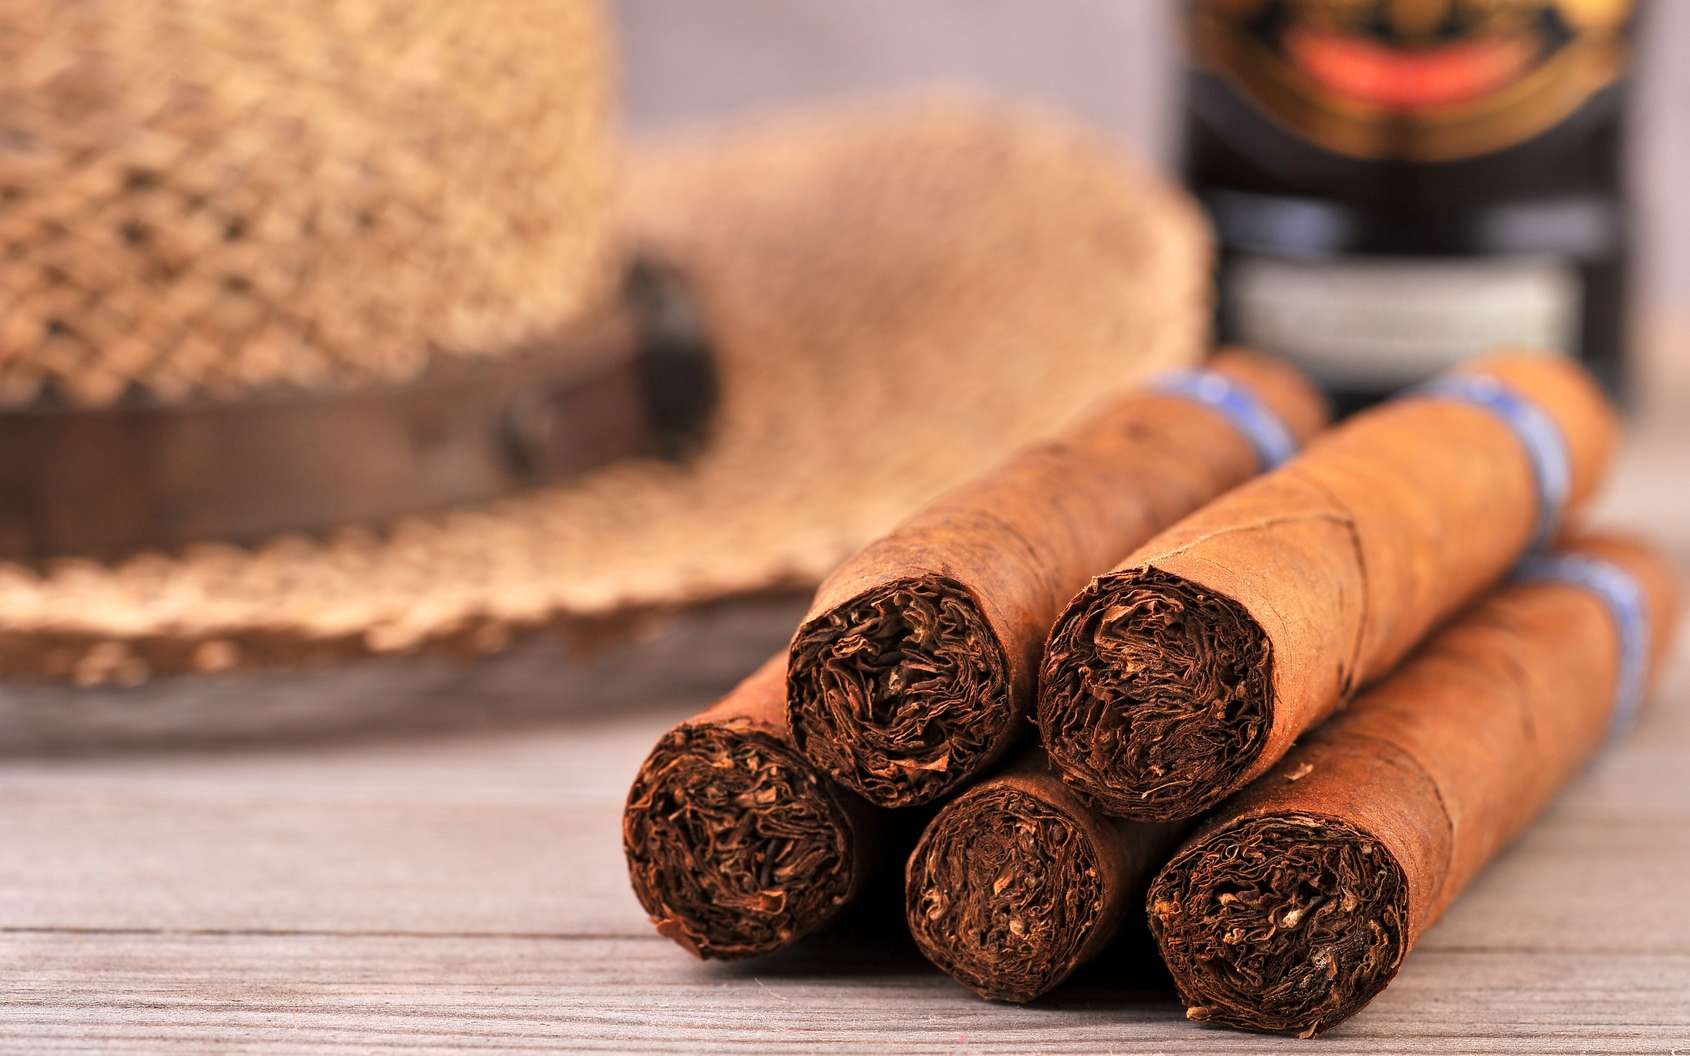 Le habano, appellation d'origine protégée du cigare cubain, est considéré comme l'un des meilleurs au monde. © unverdorbenjr, Fotolia